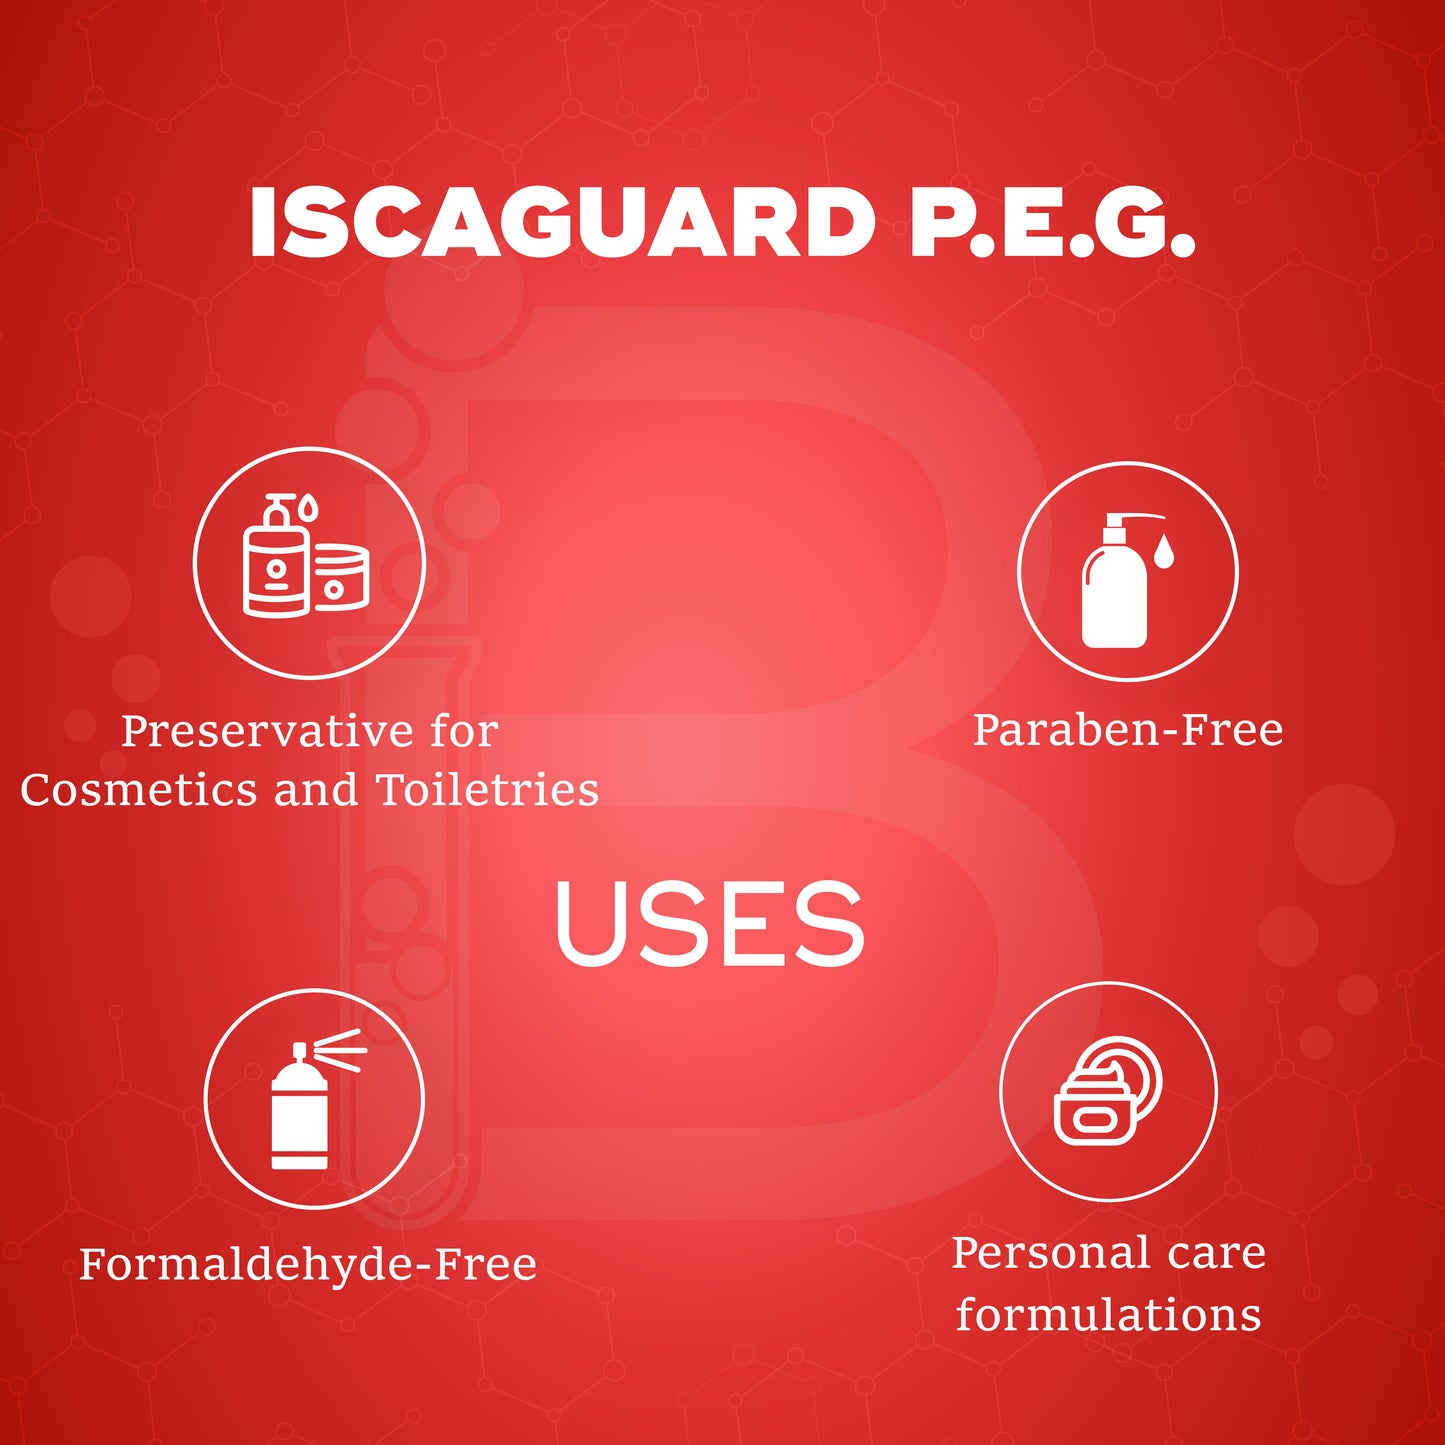 Iscaguard PEG